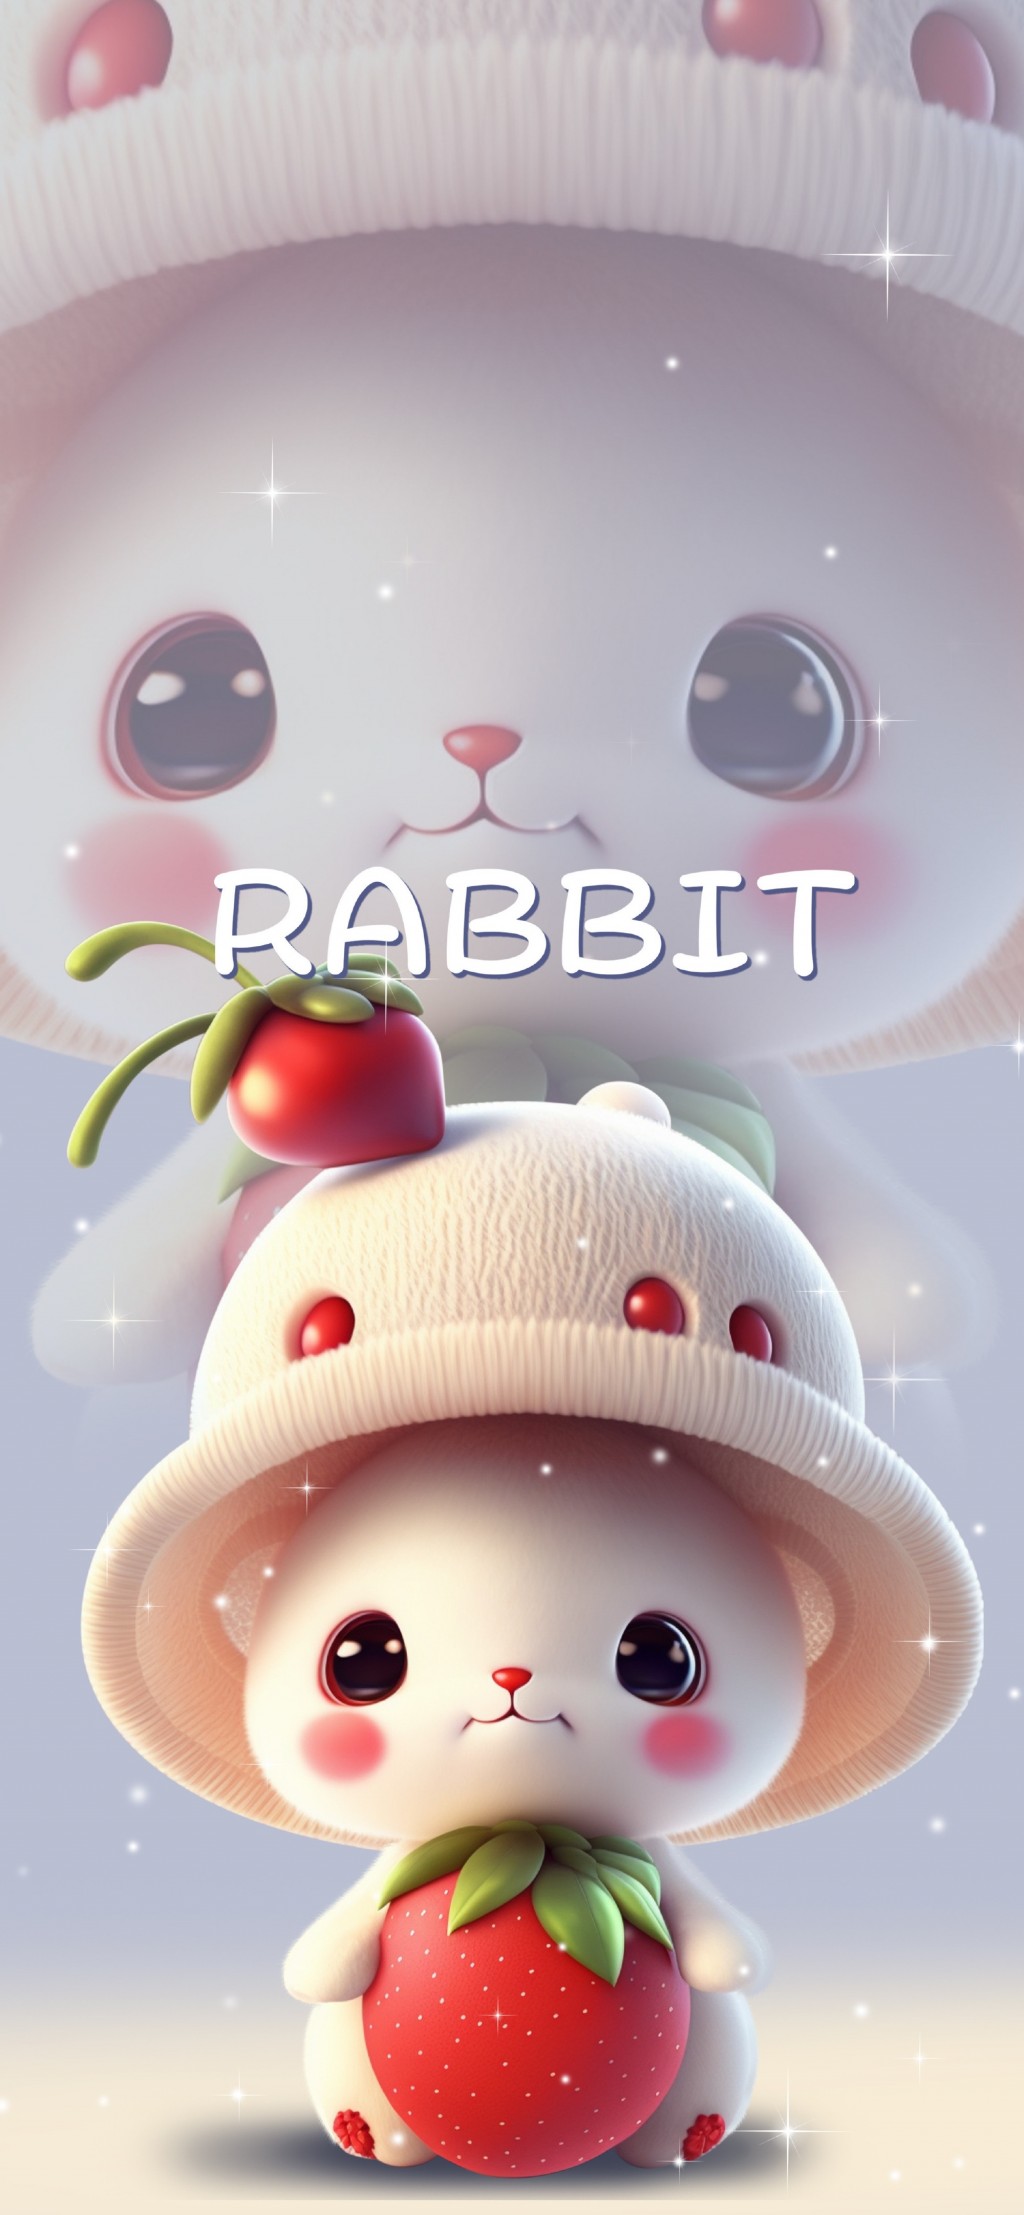 可爱兔兔超萌卡通手机壁纸